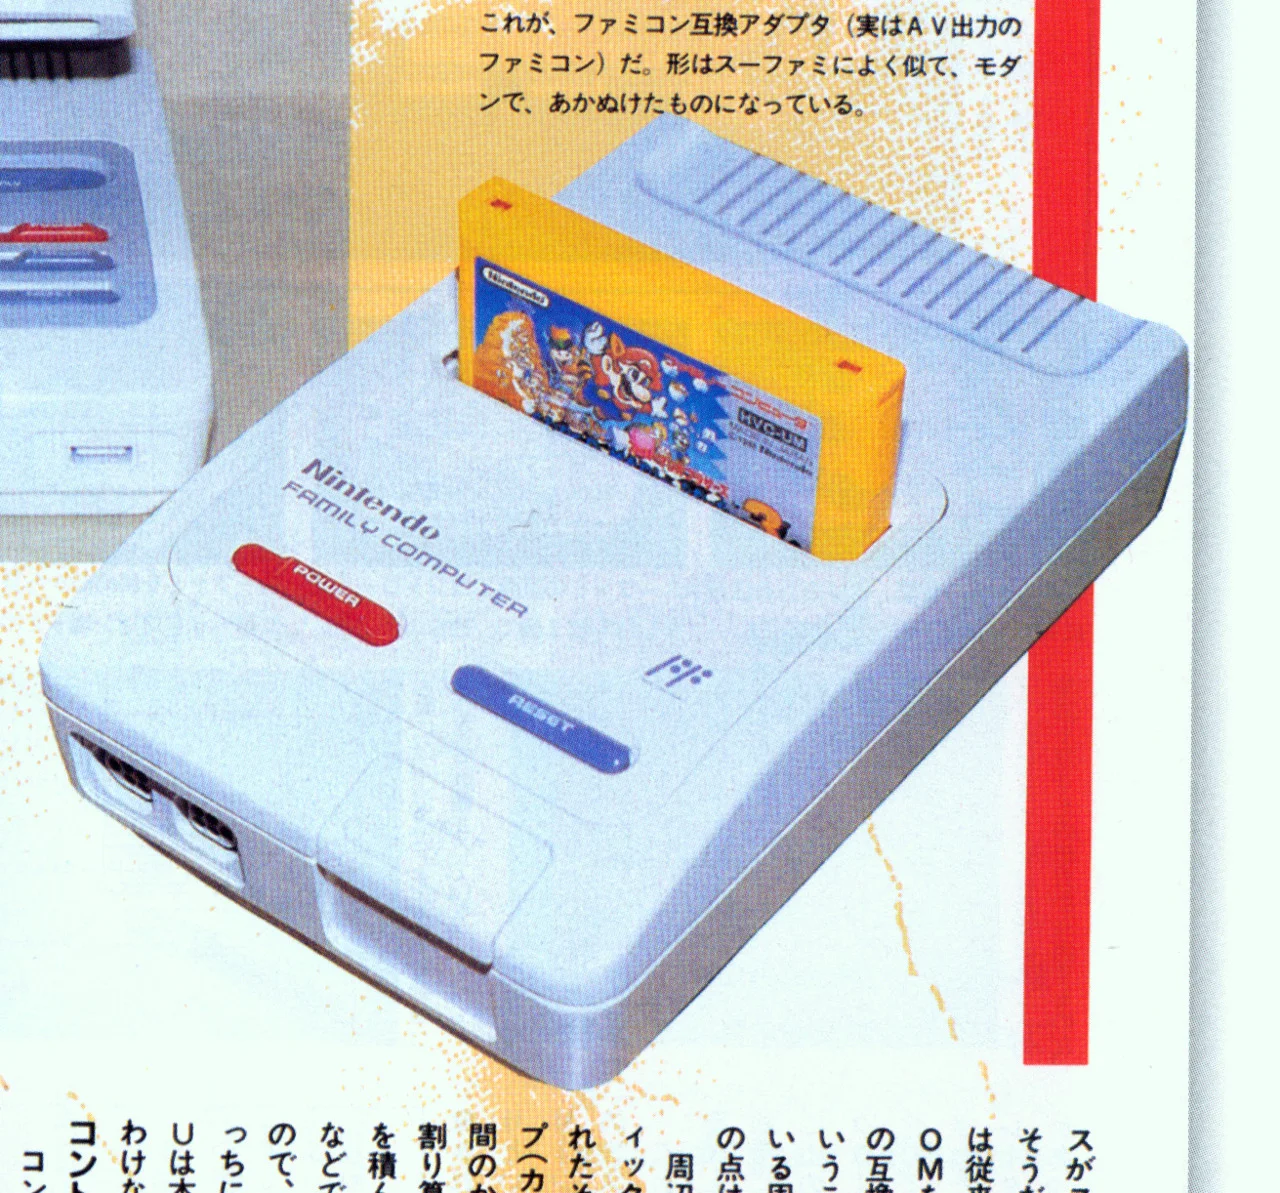  SNES 1988 Prototype Console